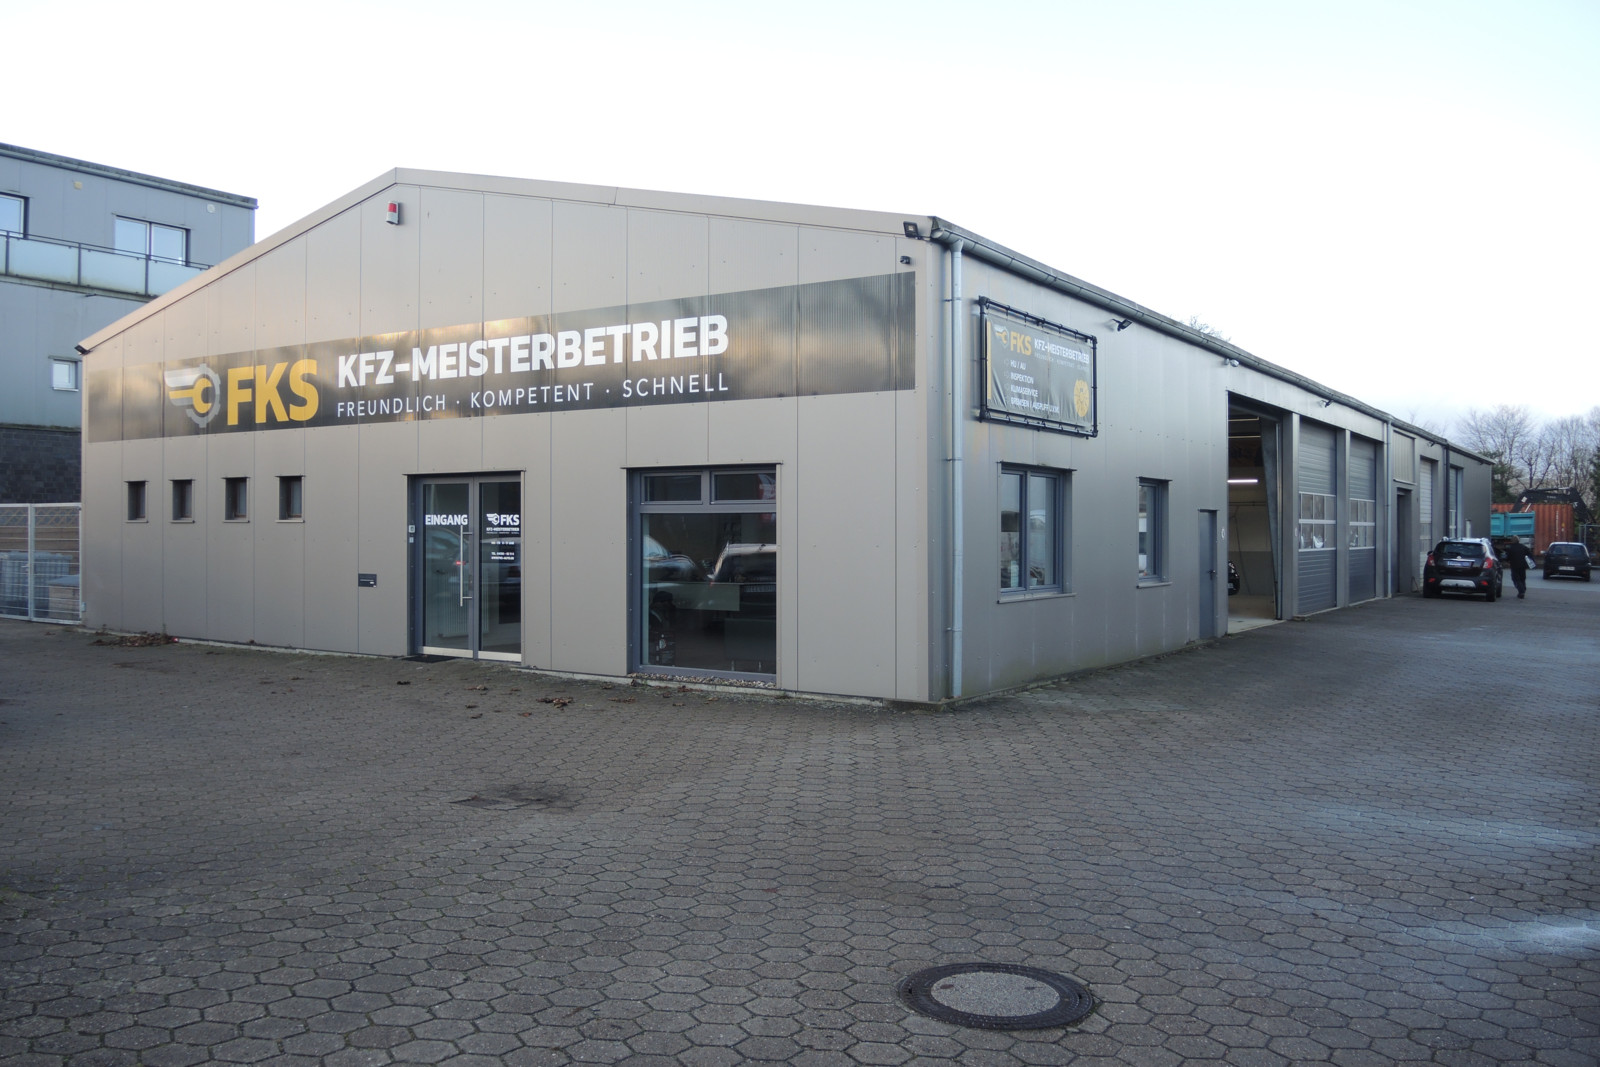 Der Reifenfachhandel und Kfz-Meisterbetrieb FKS aus Henstedt-Ulzburg hat sich einen guten Namen gemacht.